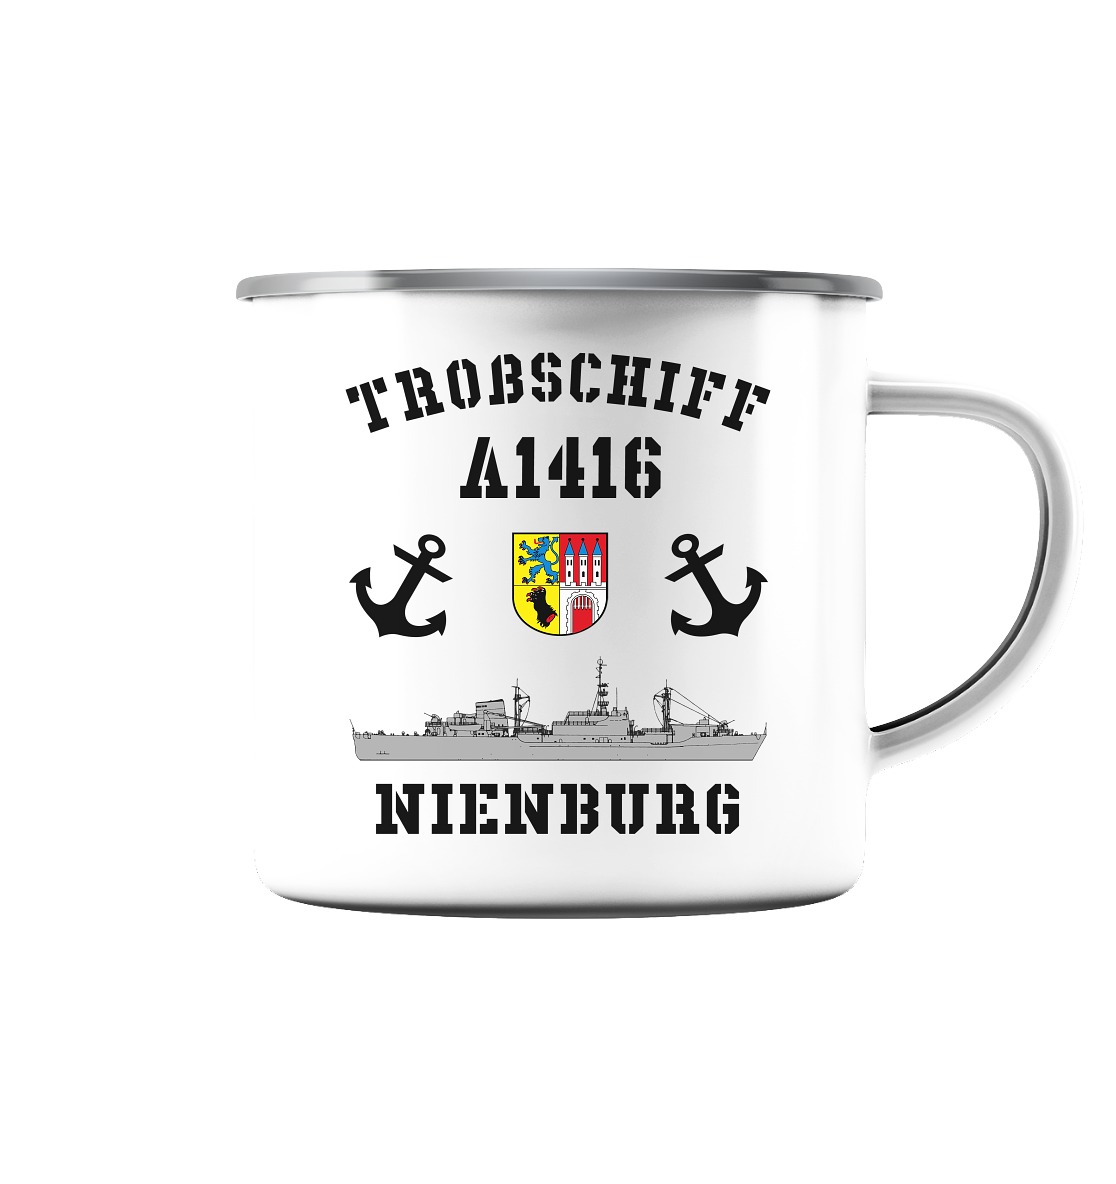 Troßschiff A1416 NIENBURG - Emaille Tasse (Silber)